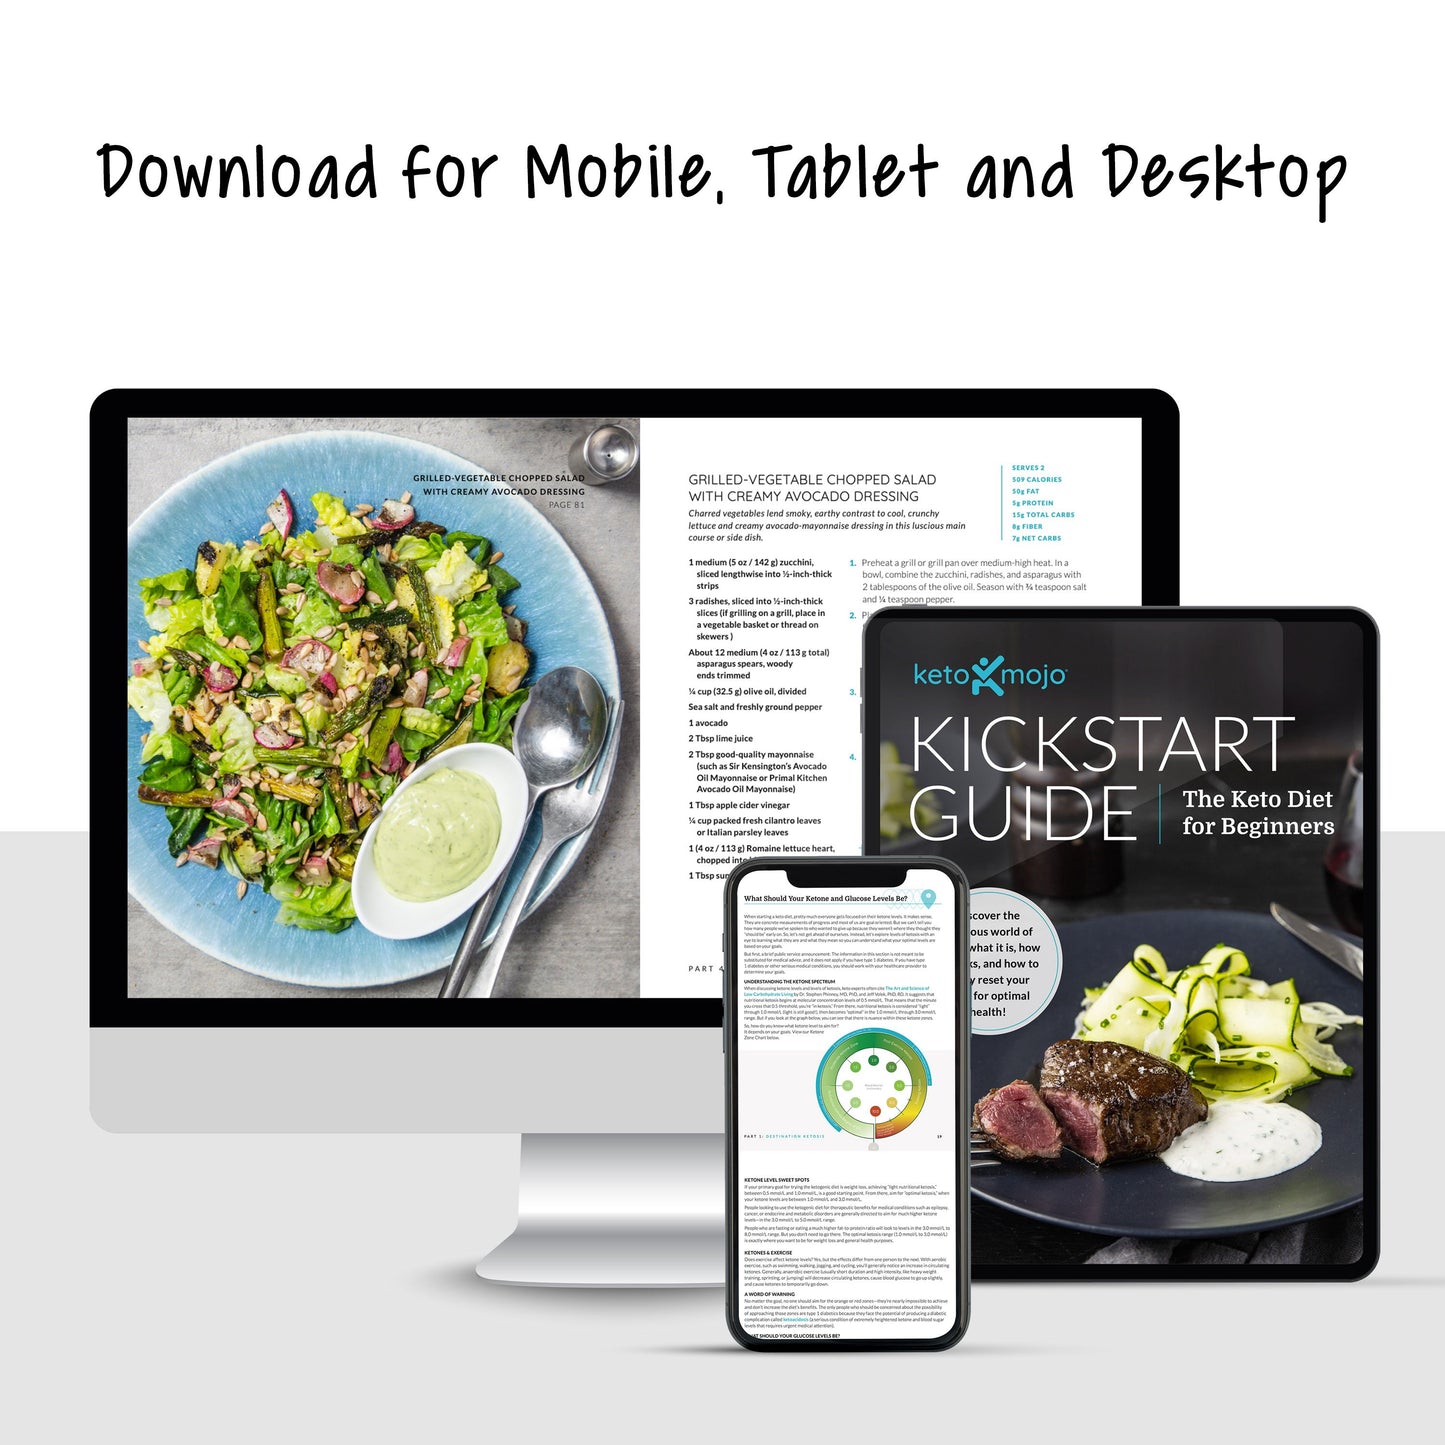 Kickstart-Leitfaden: Keto für Anfänger (digitales E-Book - nur in englischer Sprache)